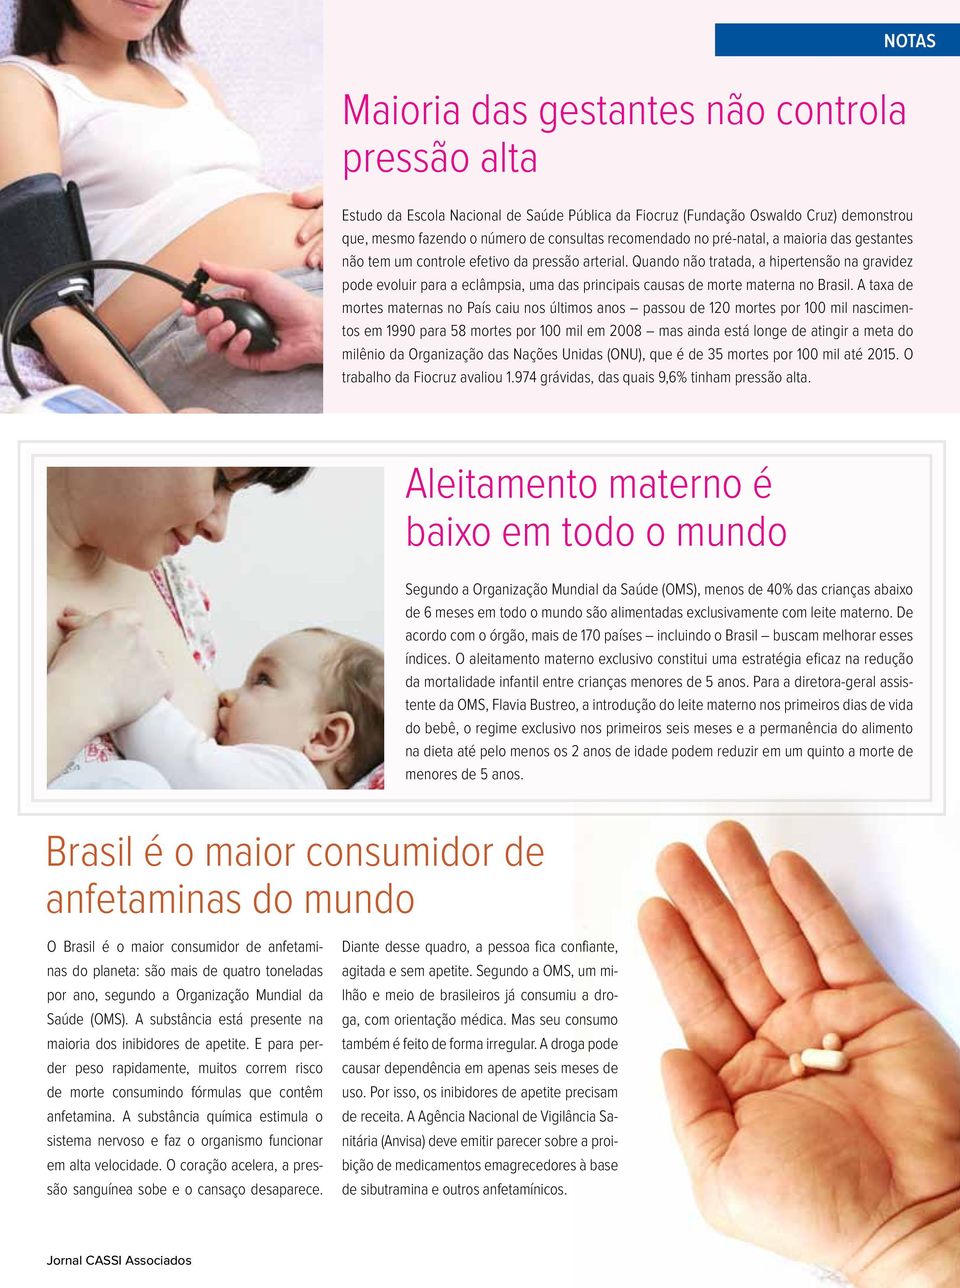 Quando não tratada, a hipertensão na gravidez pode evoluir para a eclâmpsia, uma das principais causas de morte materna no Brasil.